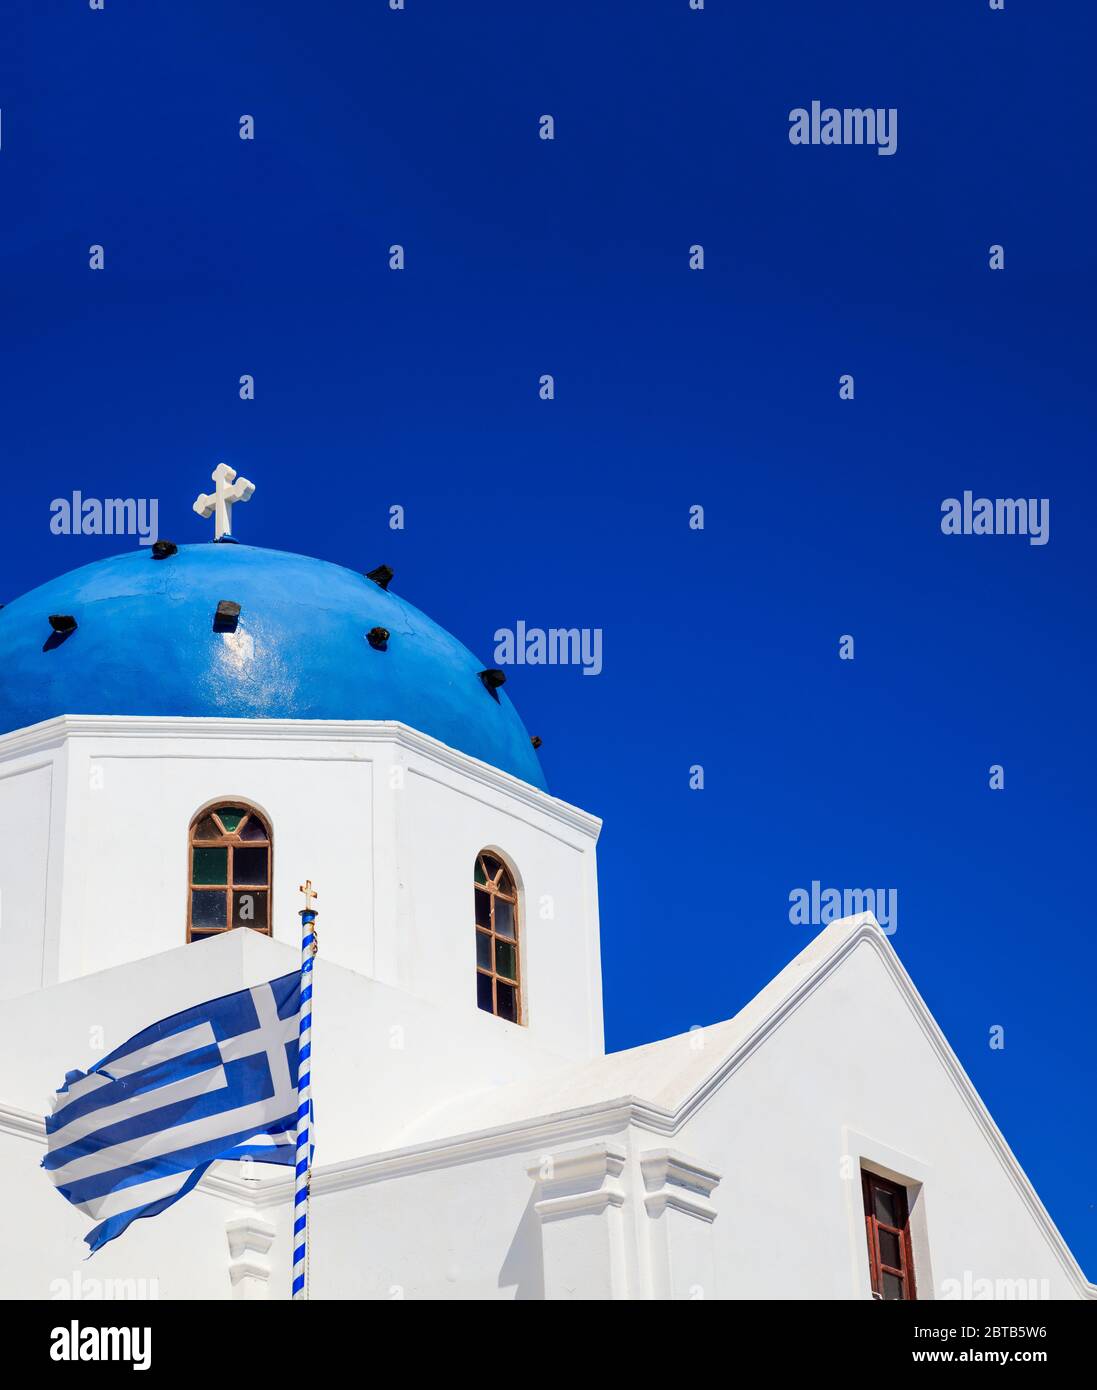 Isola di Santorini, Grecia. Bandiera greca che sventola sulla chiesa ortodossa bianca con cupola blu su sfondo blu cielo chiaro, foto verticale Foto Stock